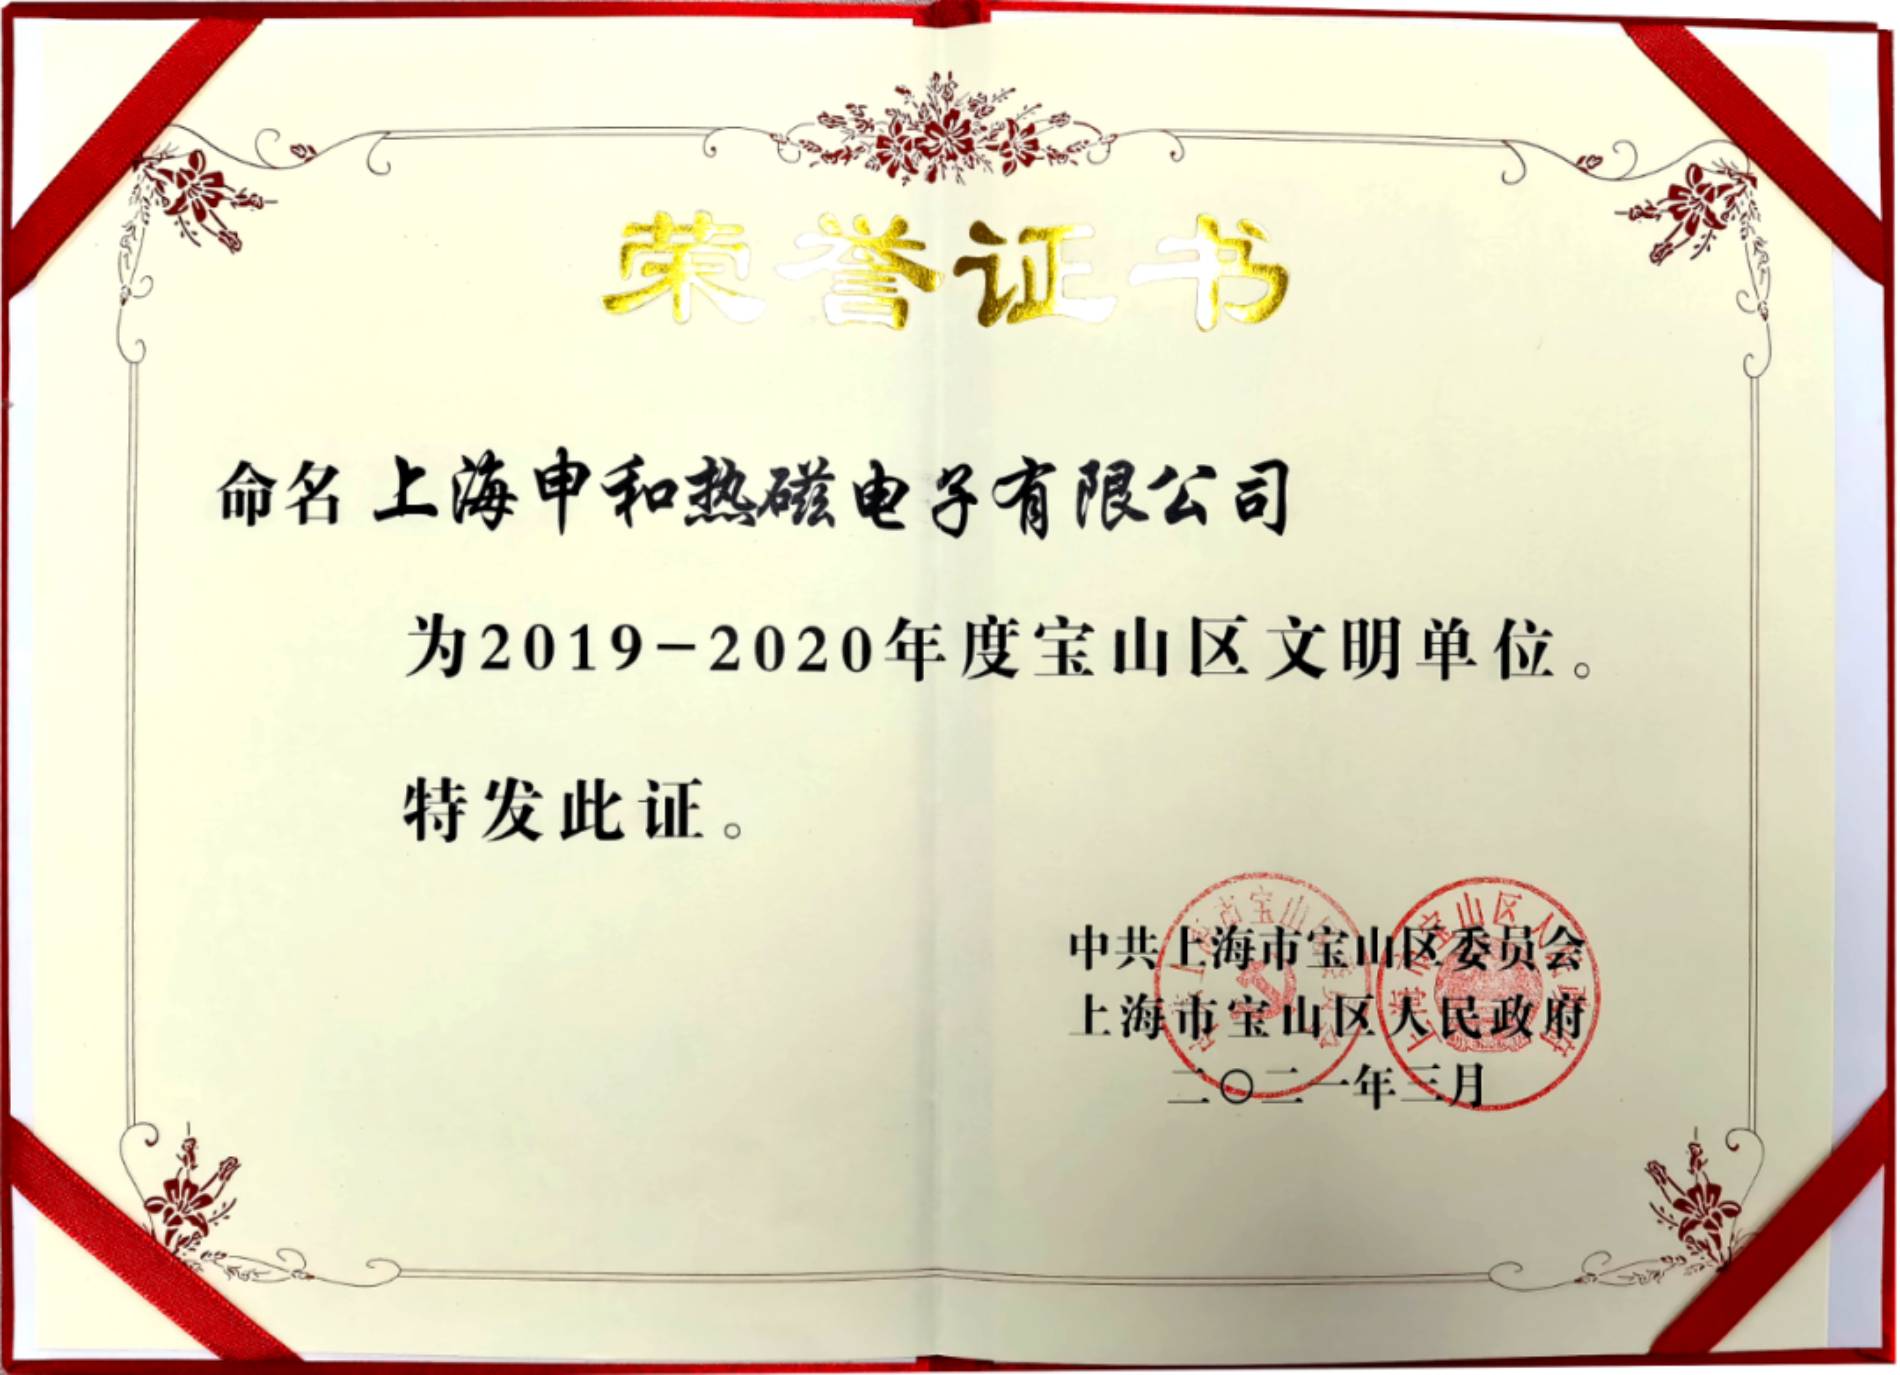 上海申和熱磁電子有限公司榮獲2019-2020年度寶山區文明單位